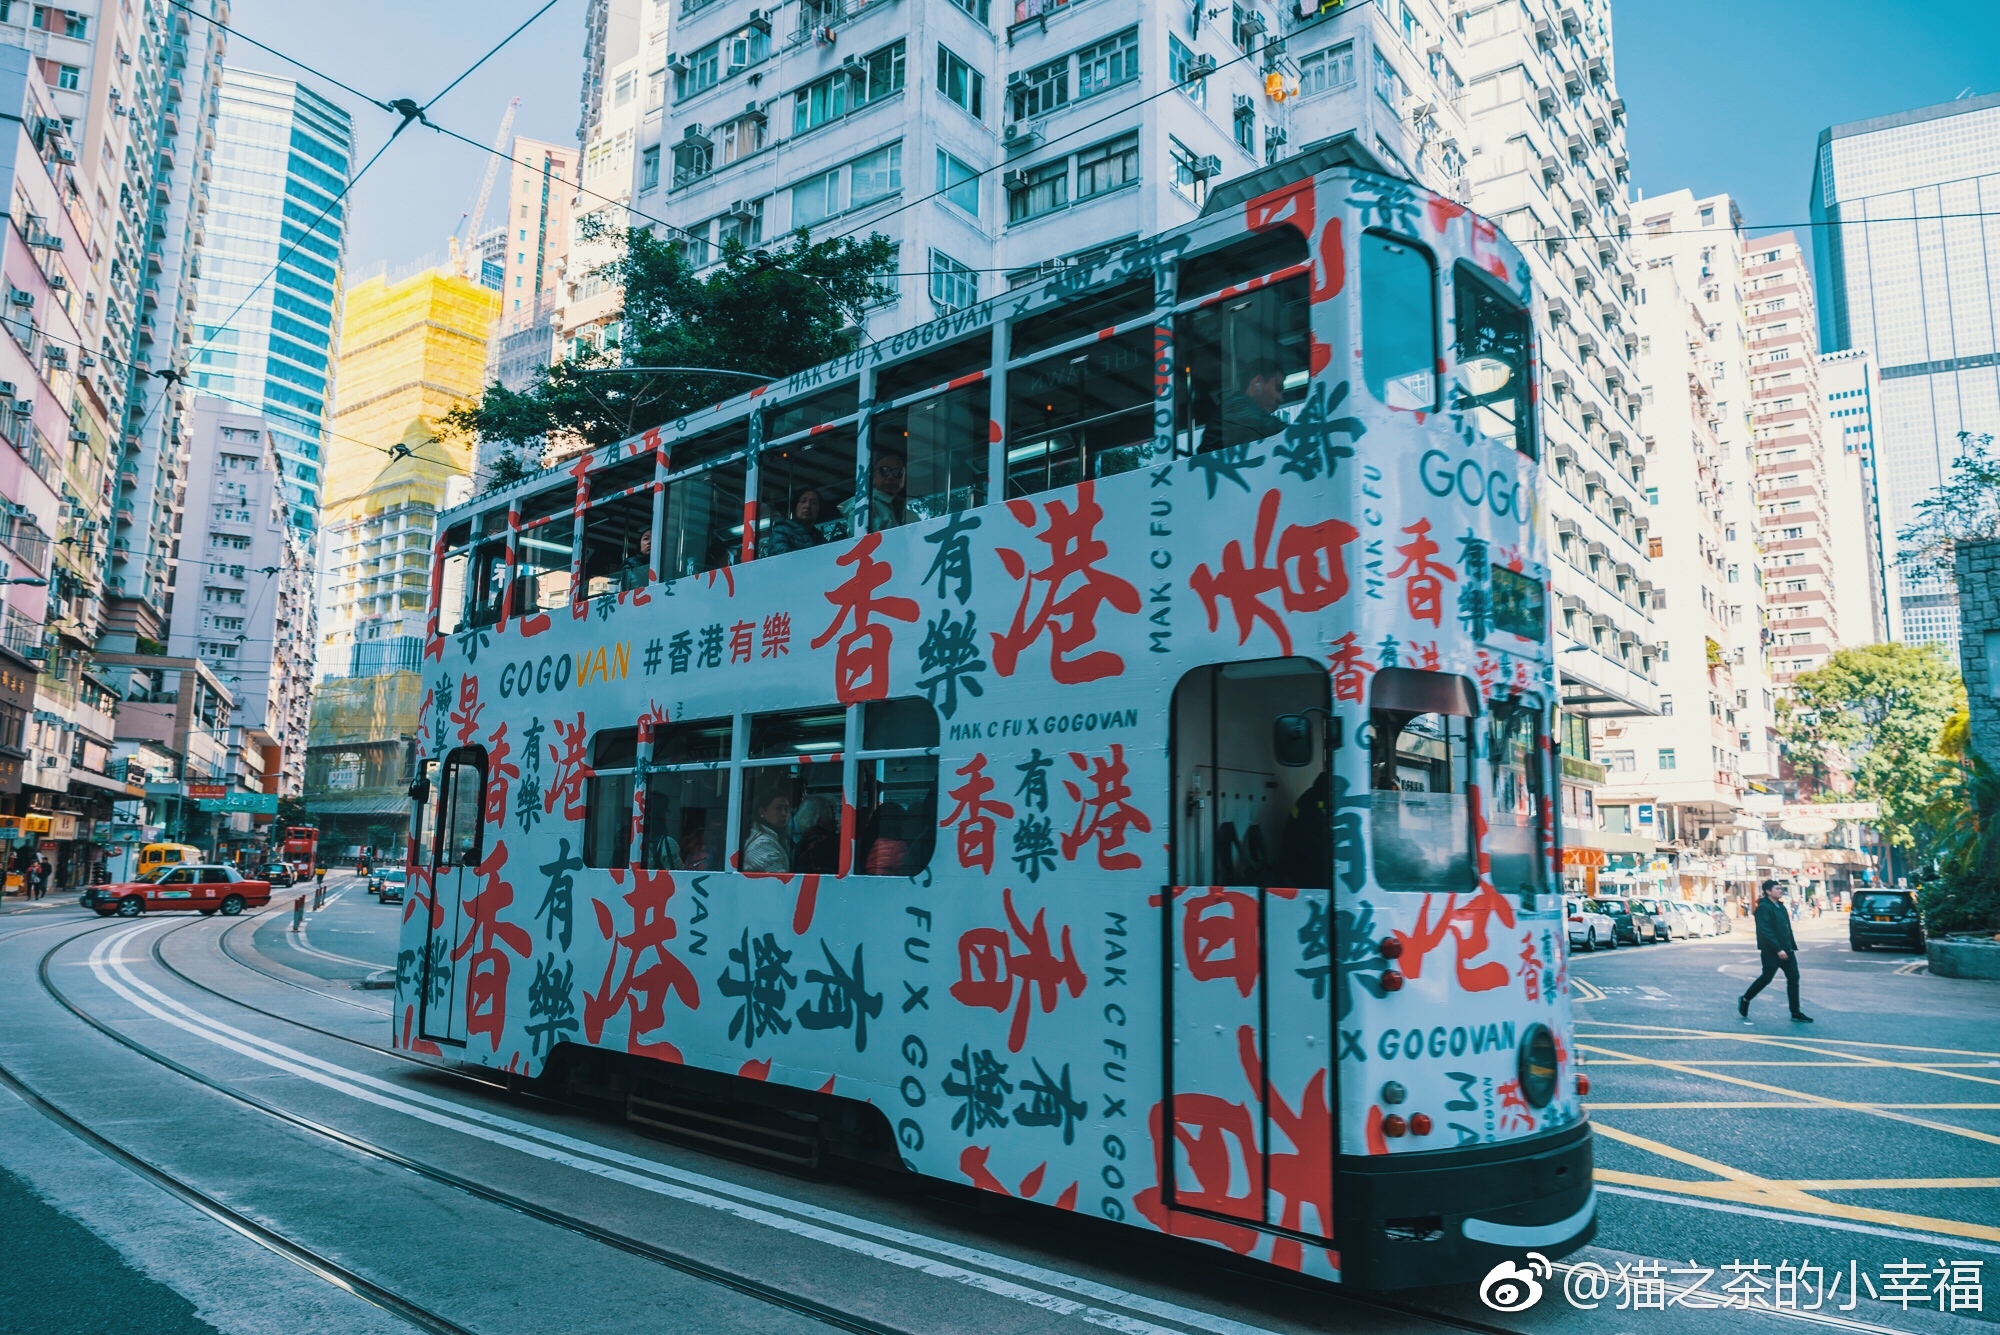 Hong Kong Taxi Culture | South China Morning Post